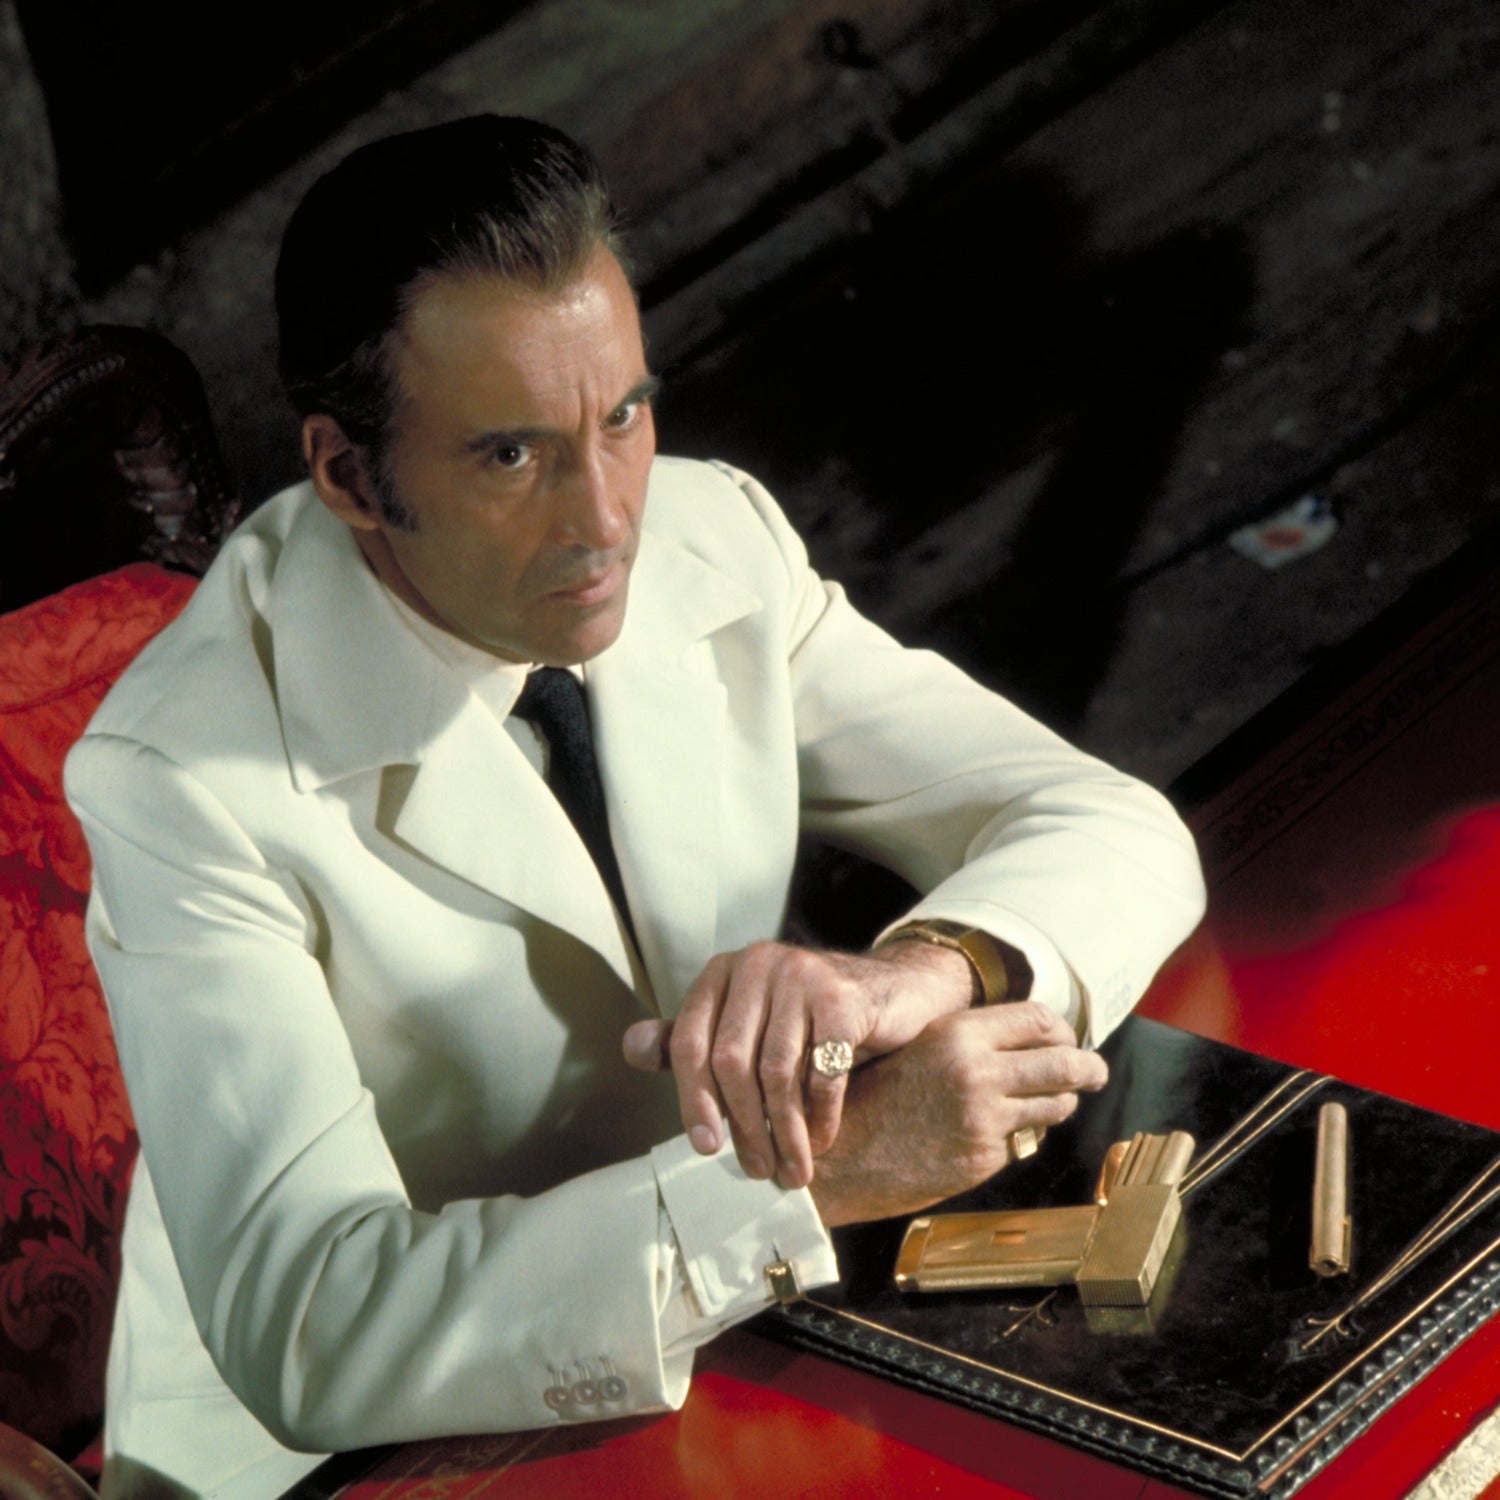 James Bond Gold-plated Golden Gun Cufflinks CUFF LINKS EML 